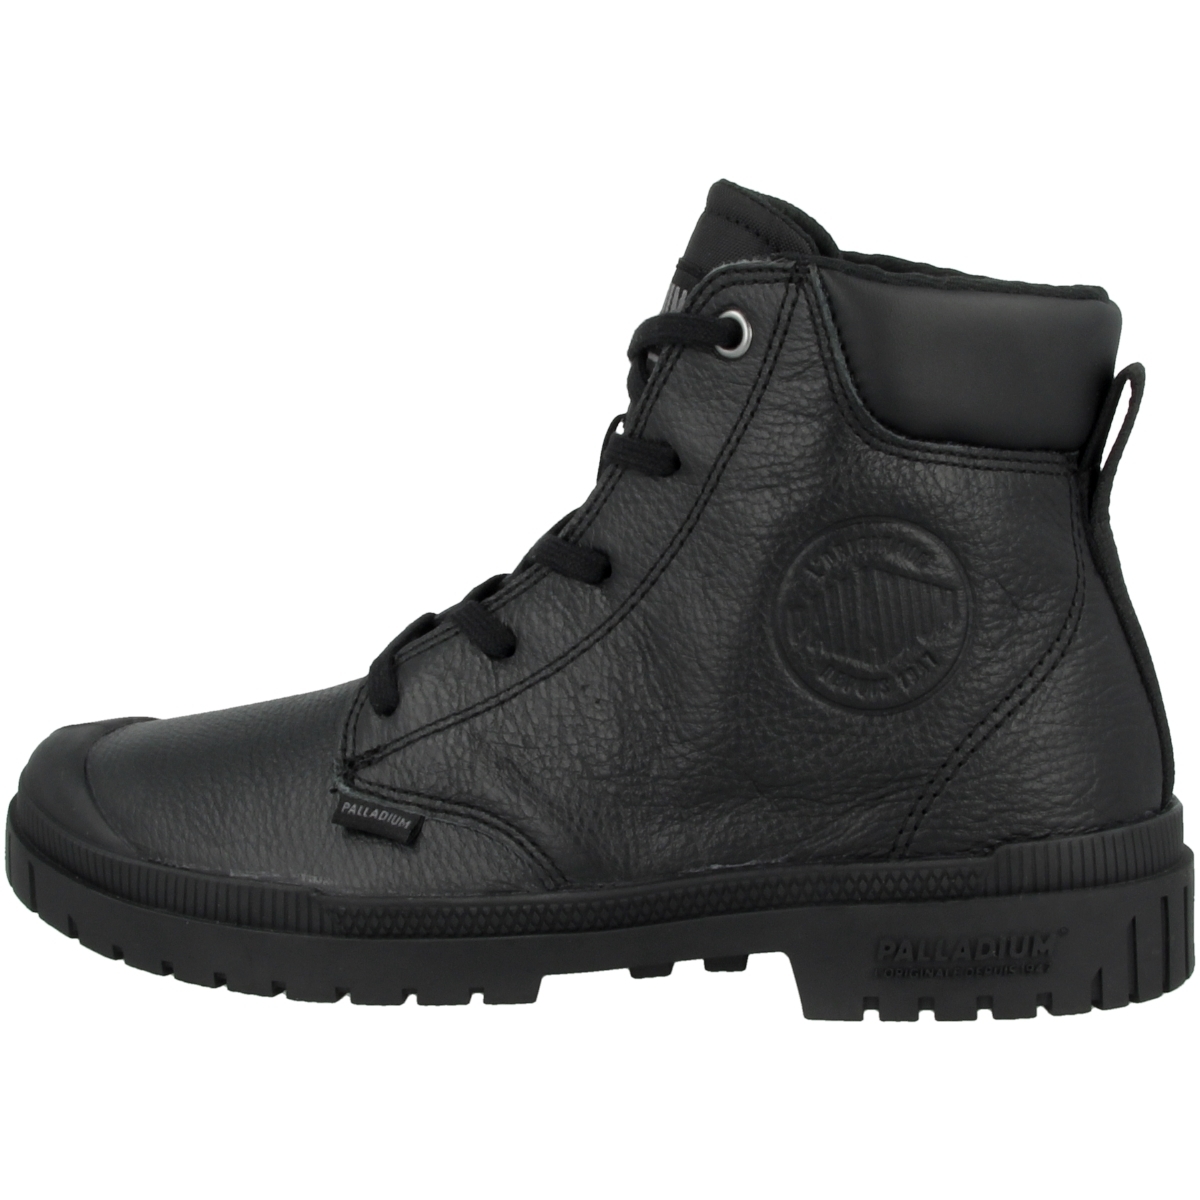 Palladium Pampa SP20 Cuff Leather Boots schwarz